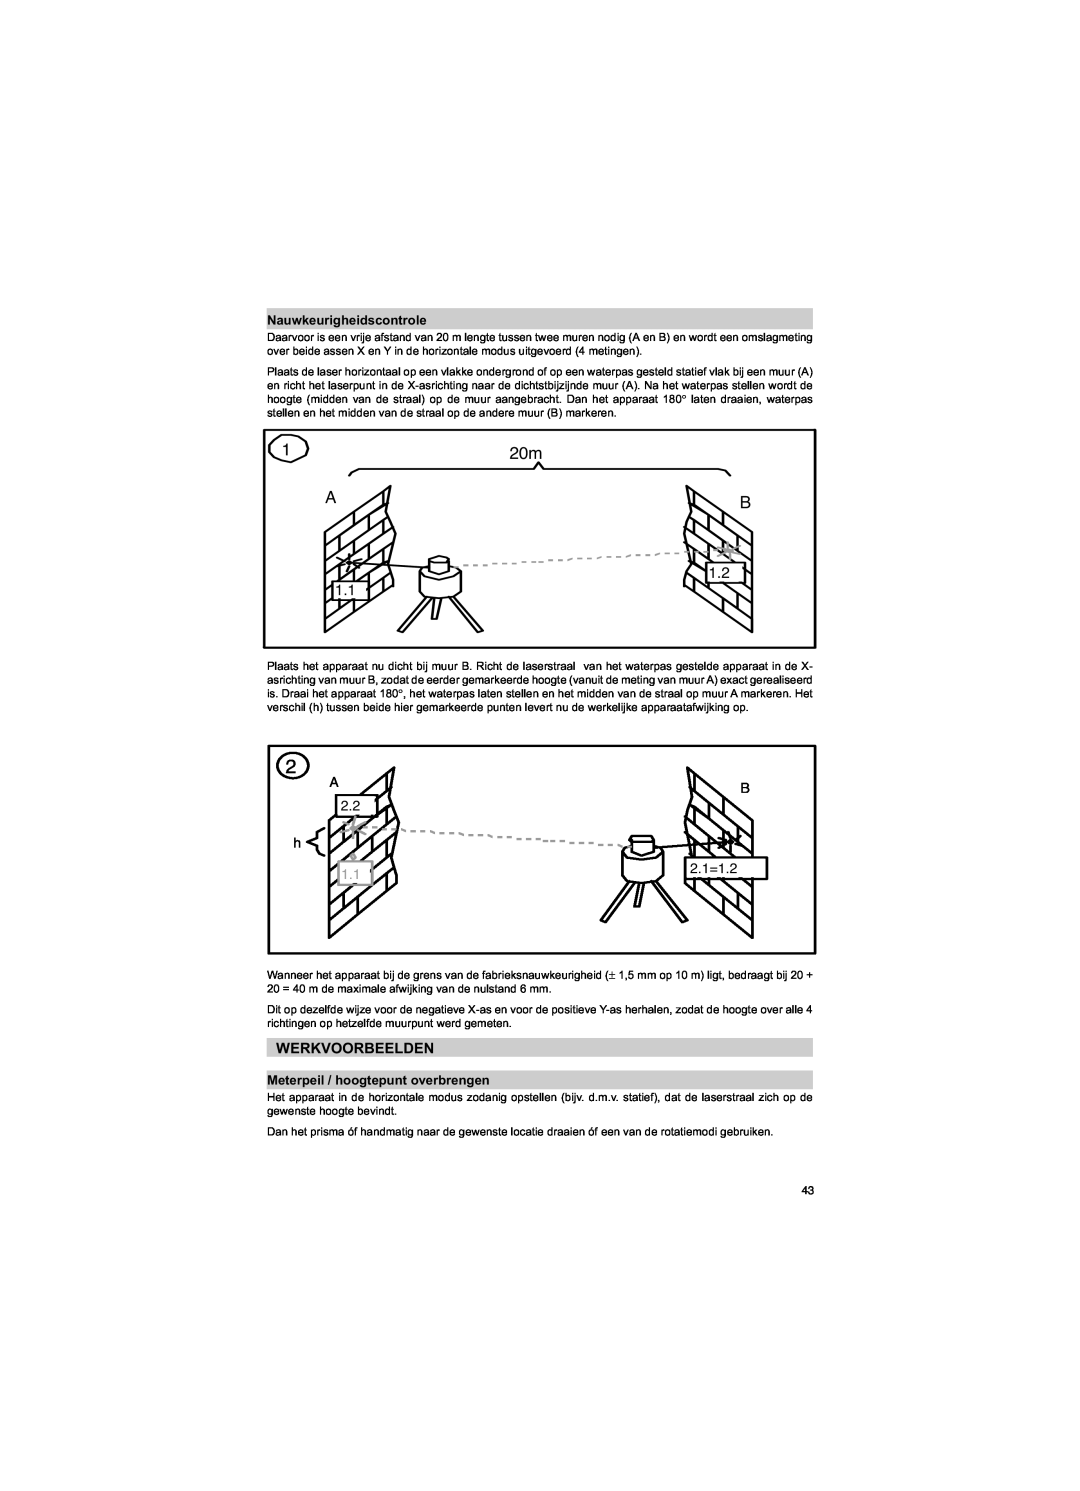 Trimble Outdoors HV301 manual Werkvoorbeelden, Nauwkeurigheidscontrole, Meterpeil / hoogtepunt overbrengen, A, B 2.1=1.2 